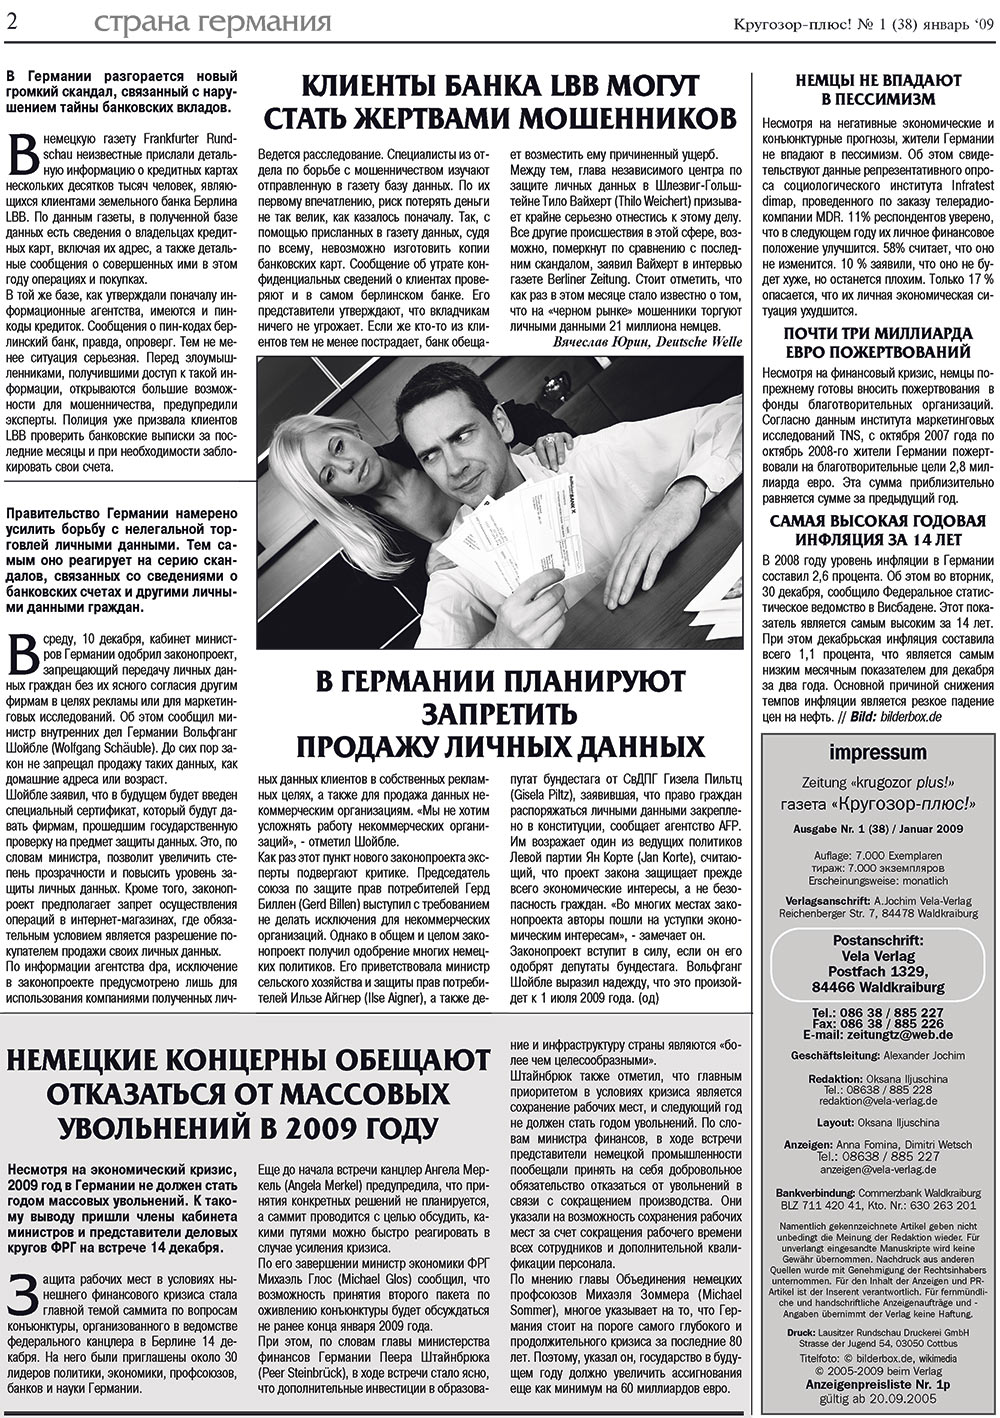 Кругозор плюс!, газета. 2009 №1 стр.2